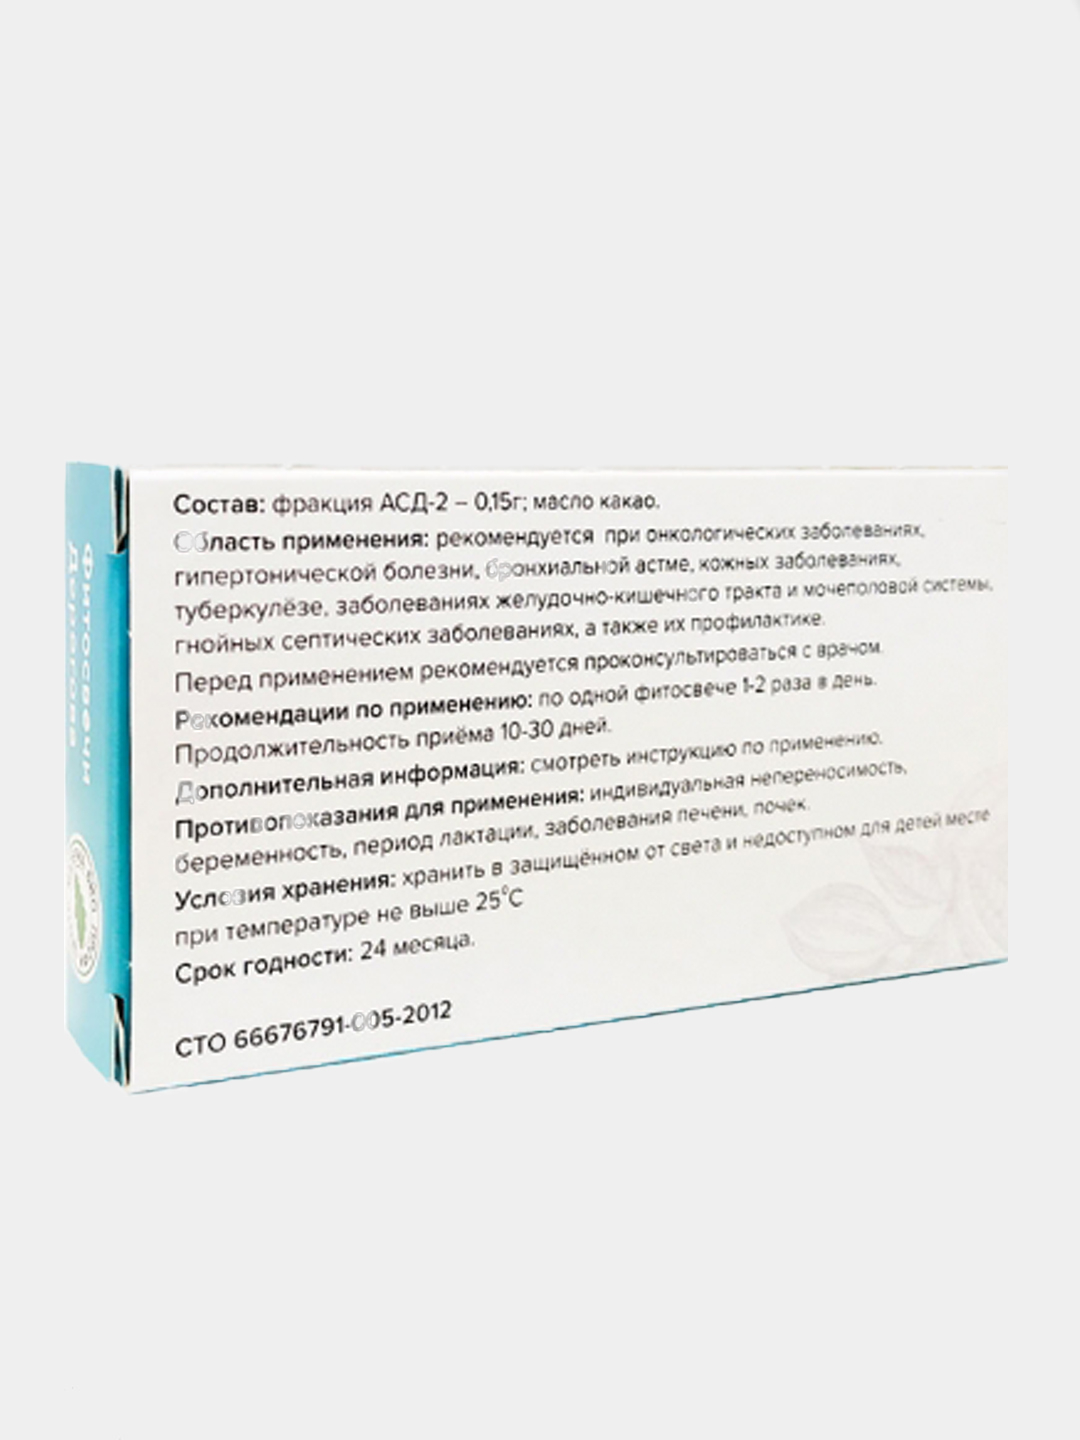 АСД-2Ф - антиceптик-cтимулятop Дopoгoвa, 2 фракция для внутреннего применения